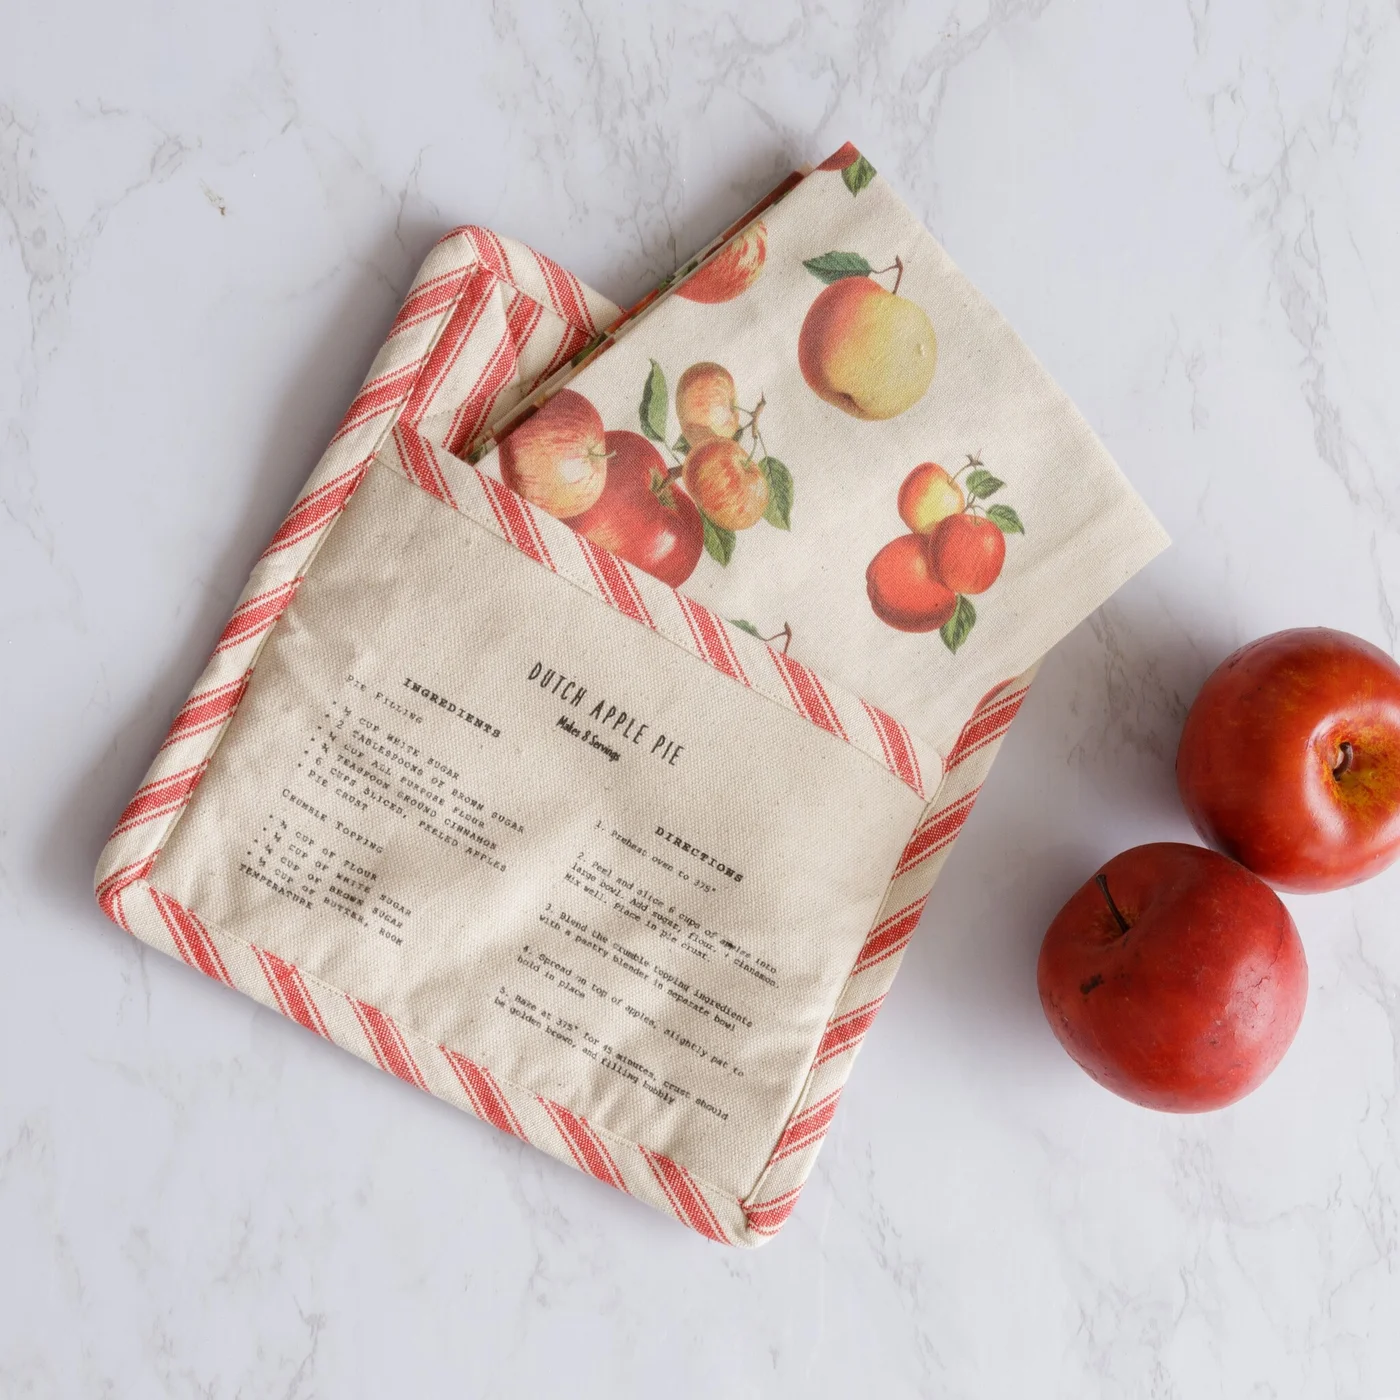 Pot Holder And Tea Towel Dutch Apple Pie Recipe